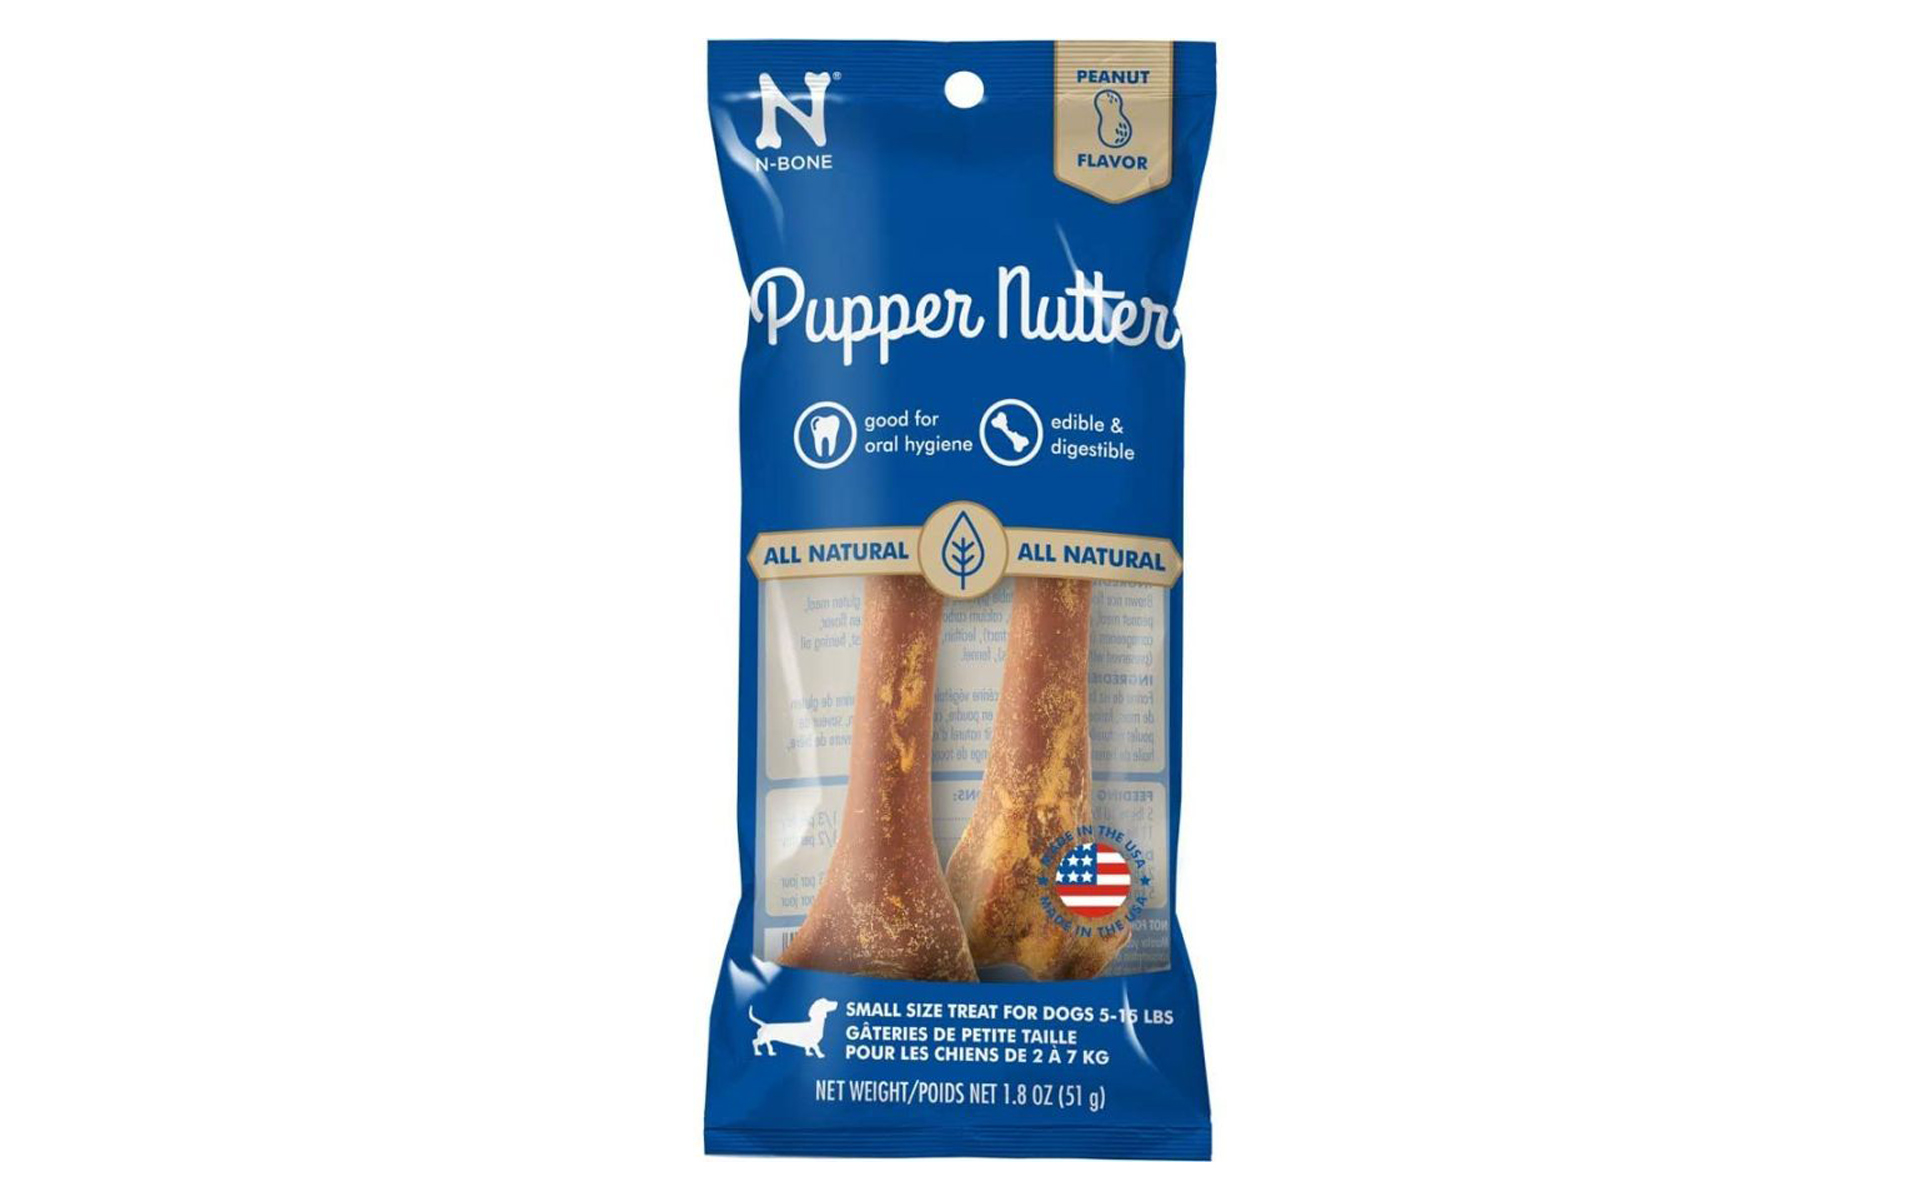 Pupper Nutter N-Bone